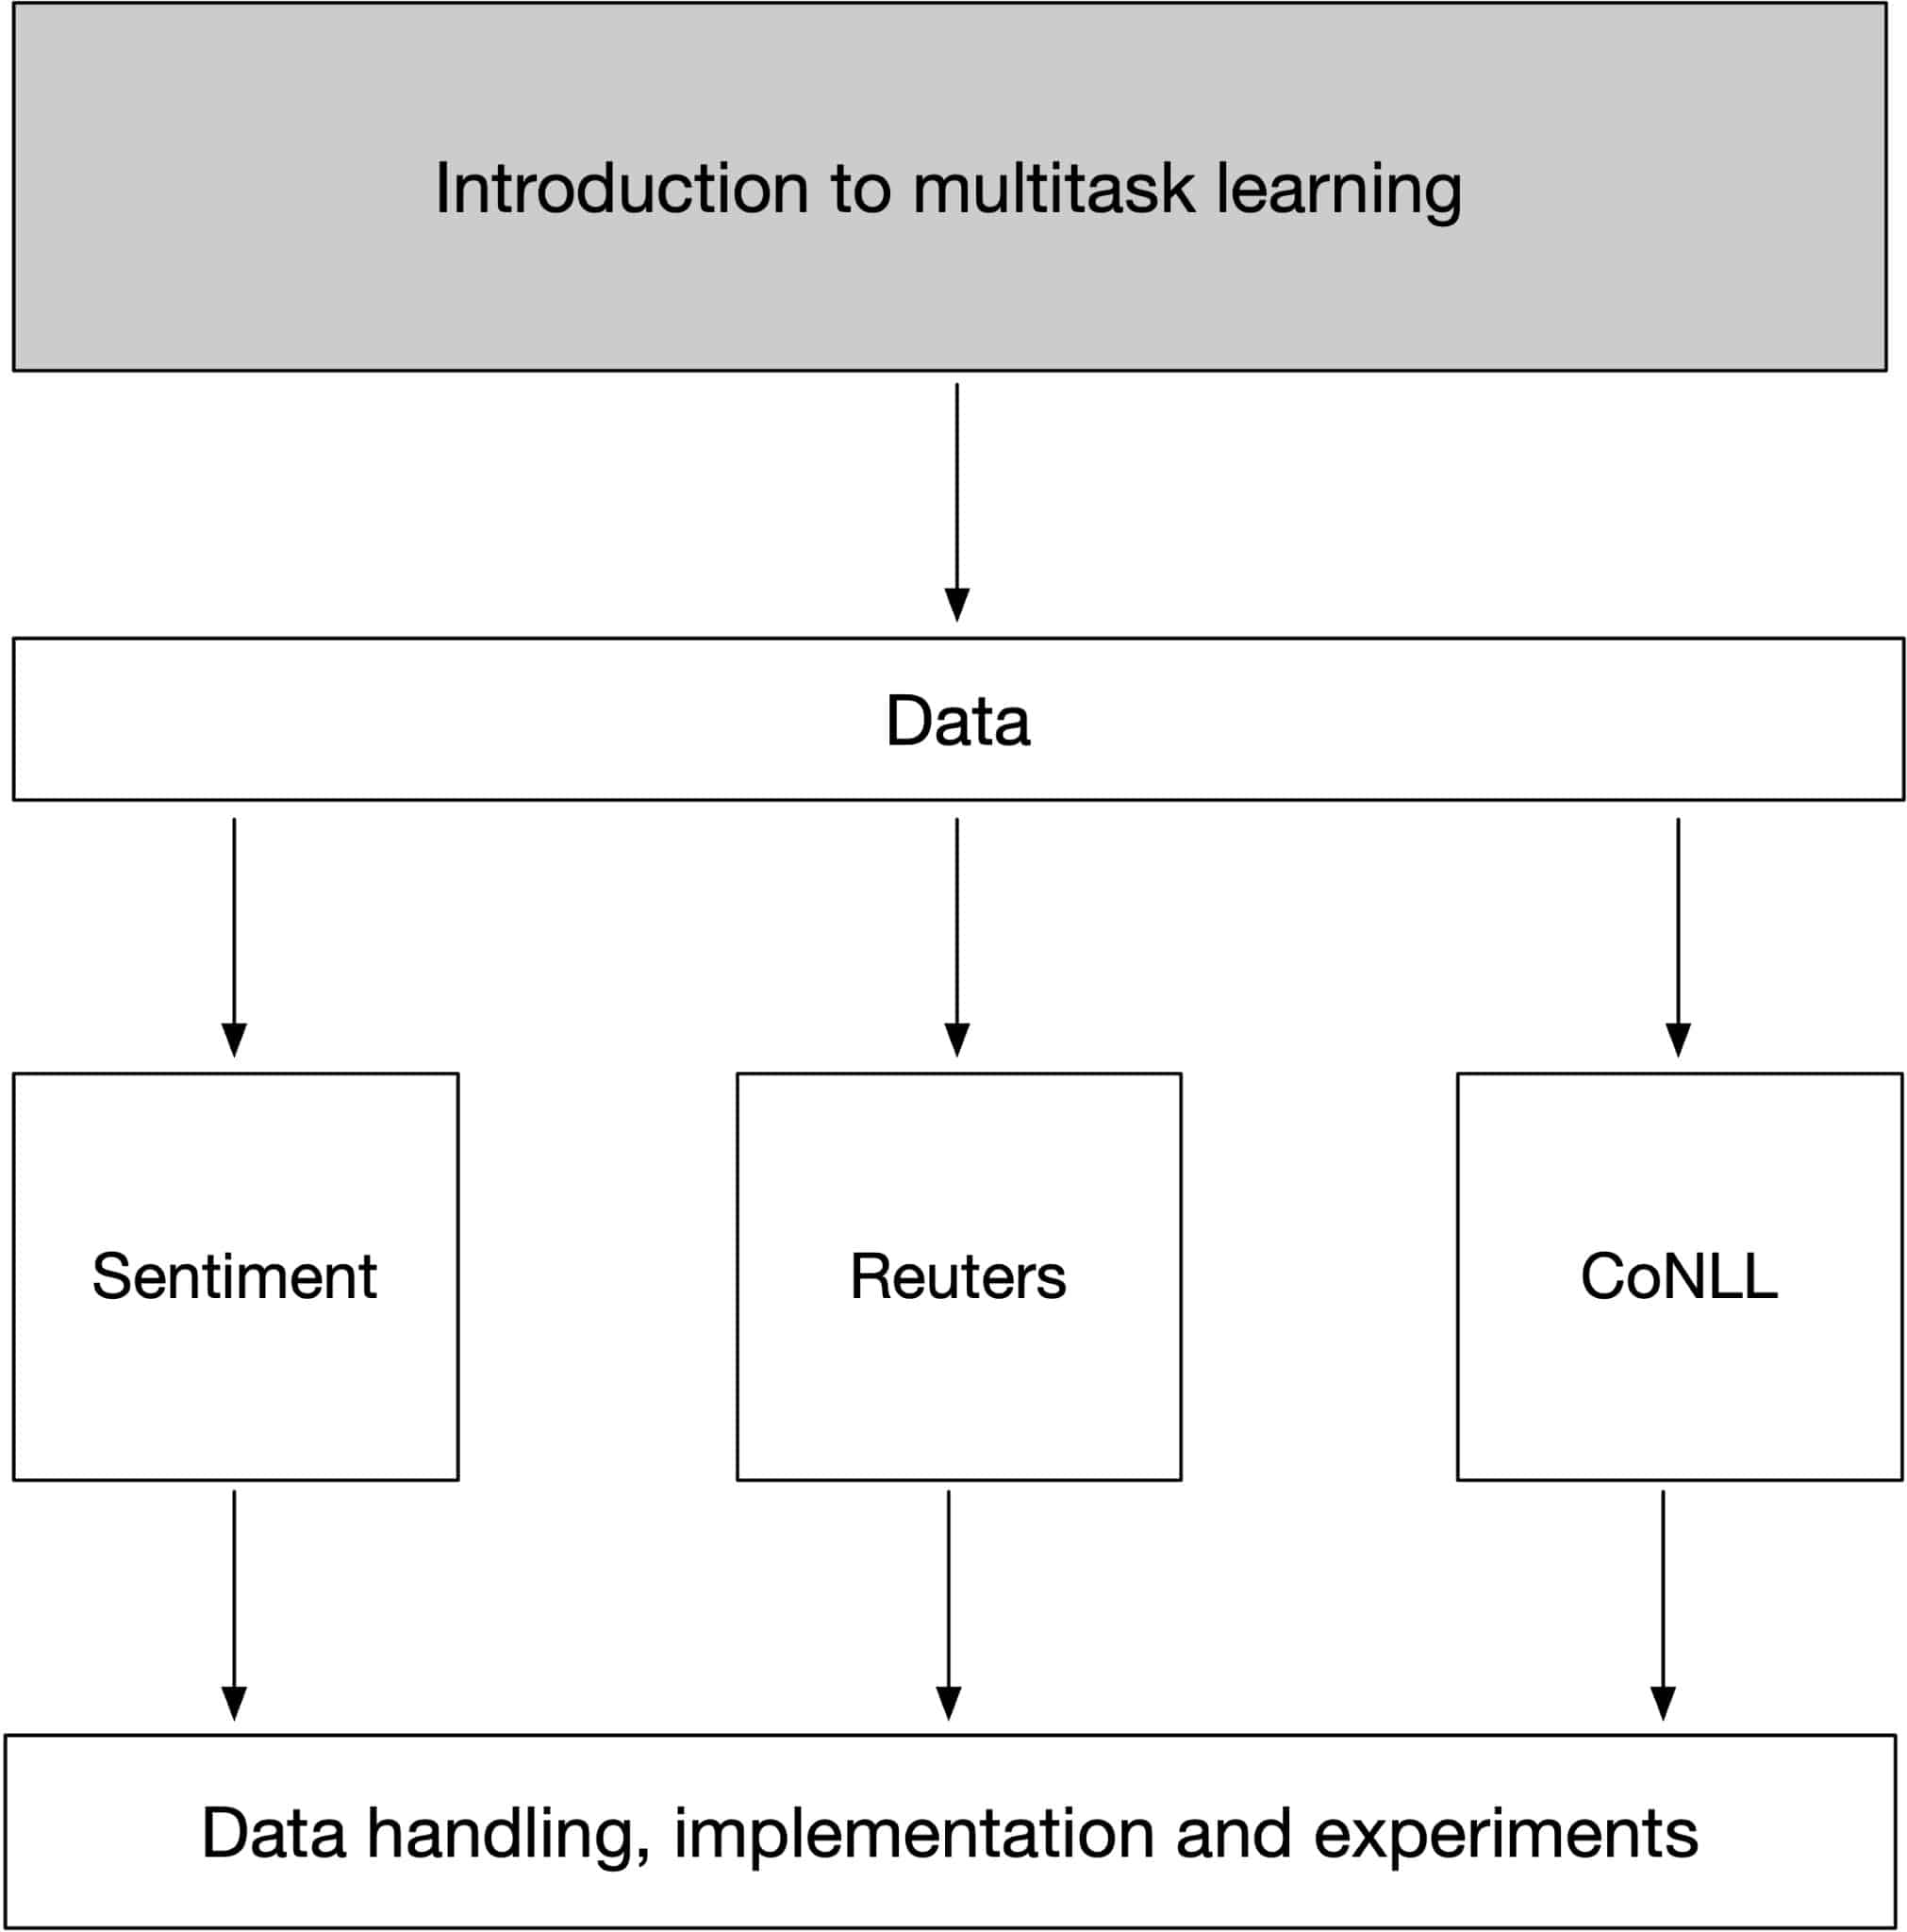 Multitask learning